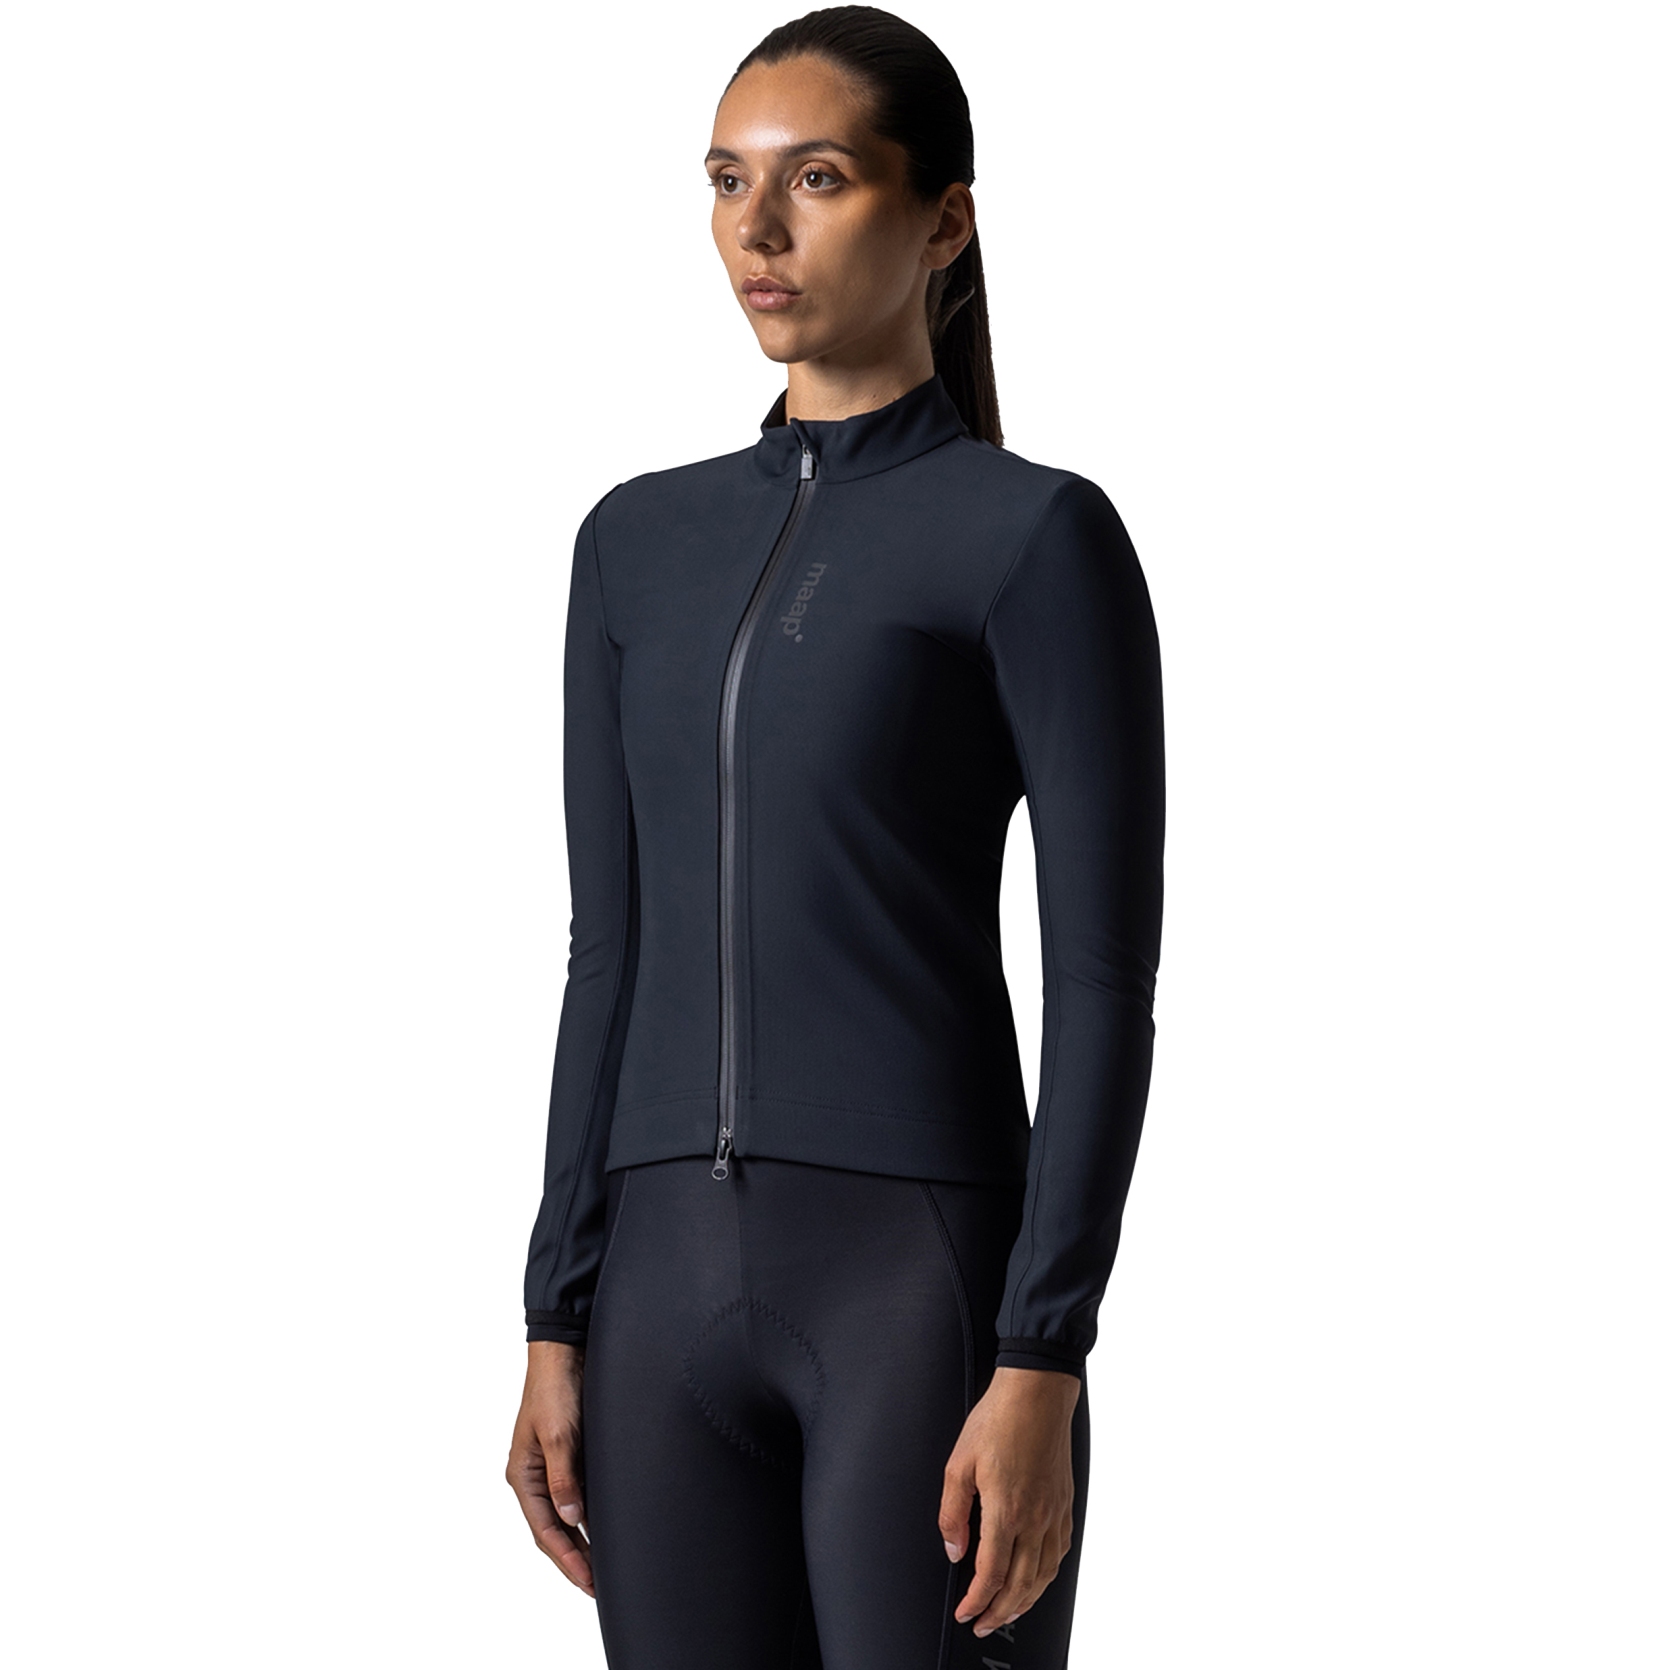 Produktbild von MAAP Training Winter Jacke Damen - schwarz